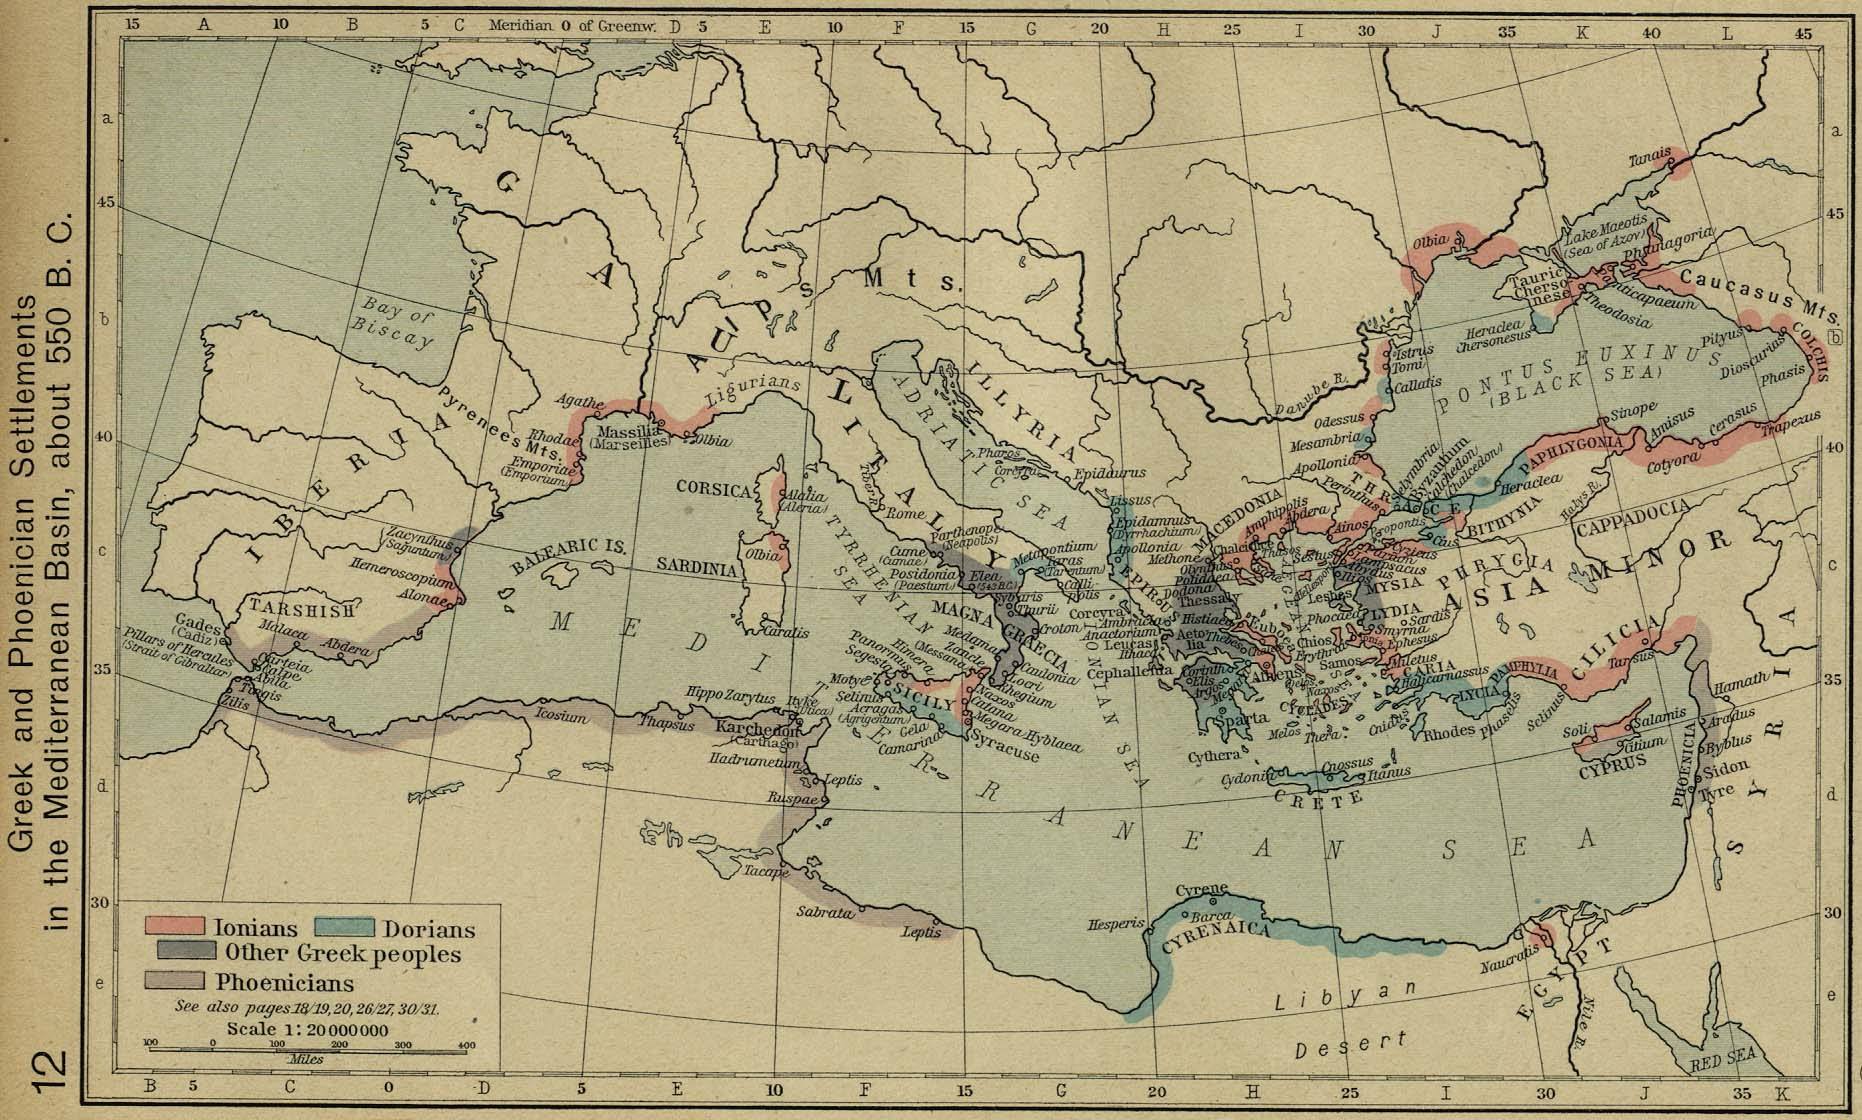 Asentamientos griegos y fenicios en el Mediterráneo (550 a. C.)